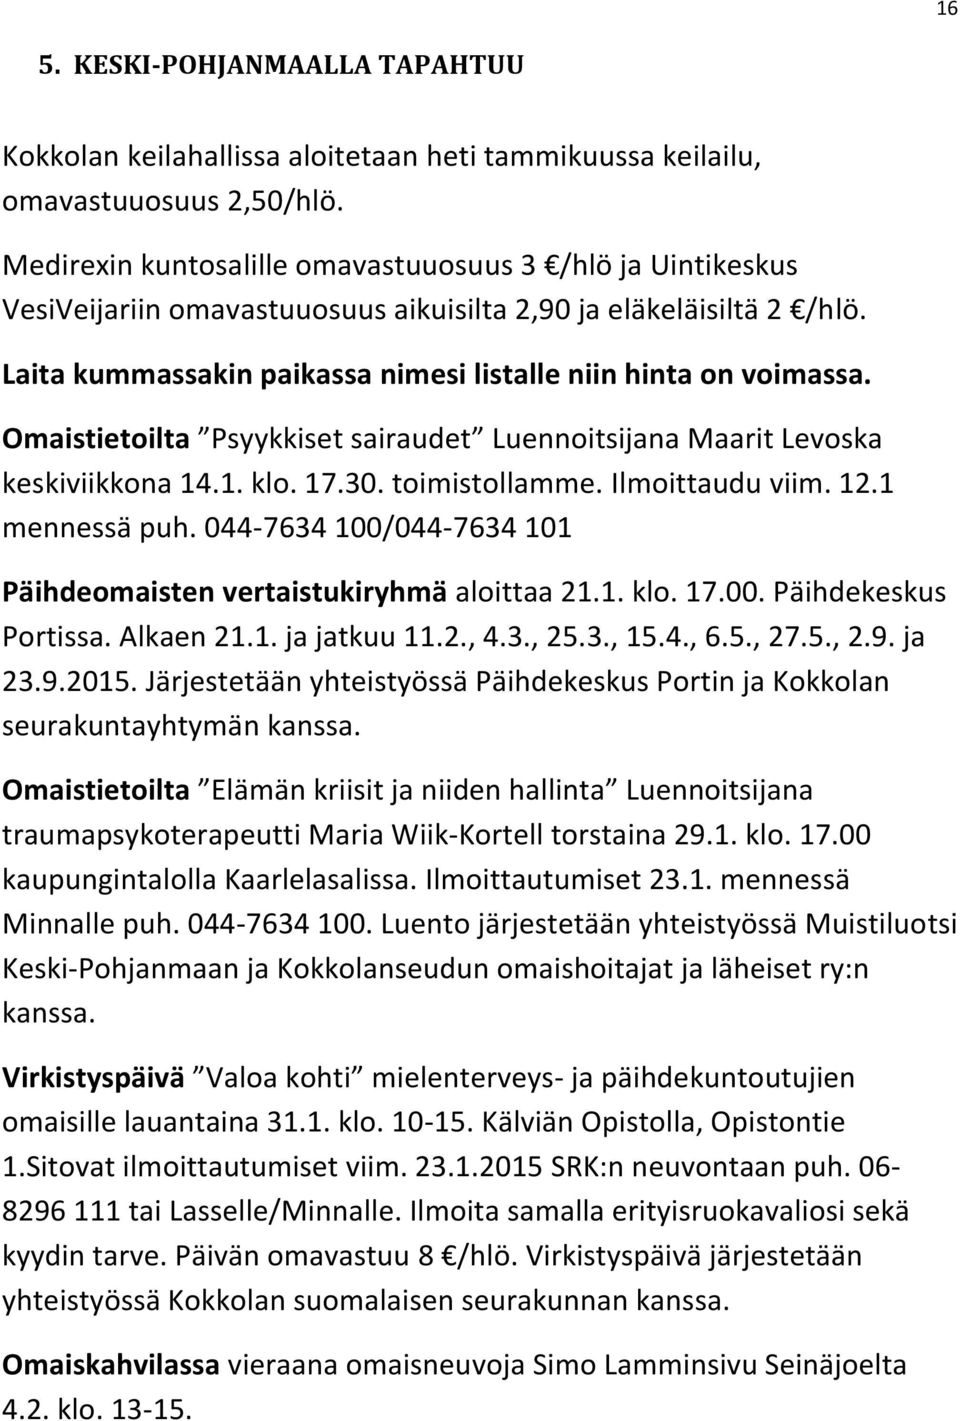 Omaistietoilta Psyykkiset sairaudet Luennoitsijana Maarit Levoska keskiviikkona 14.1. klo. 17.30. toimistollamme. Ilmoittaudu viim. 12.1 mennessä puh.